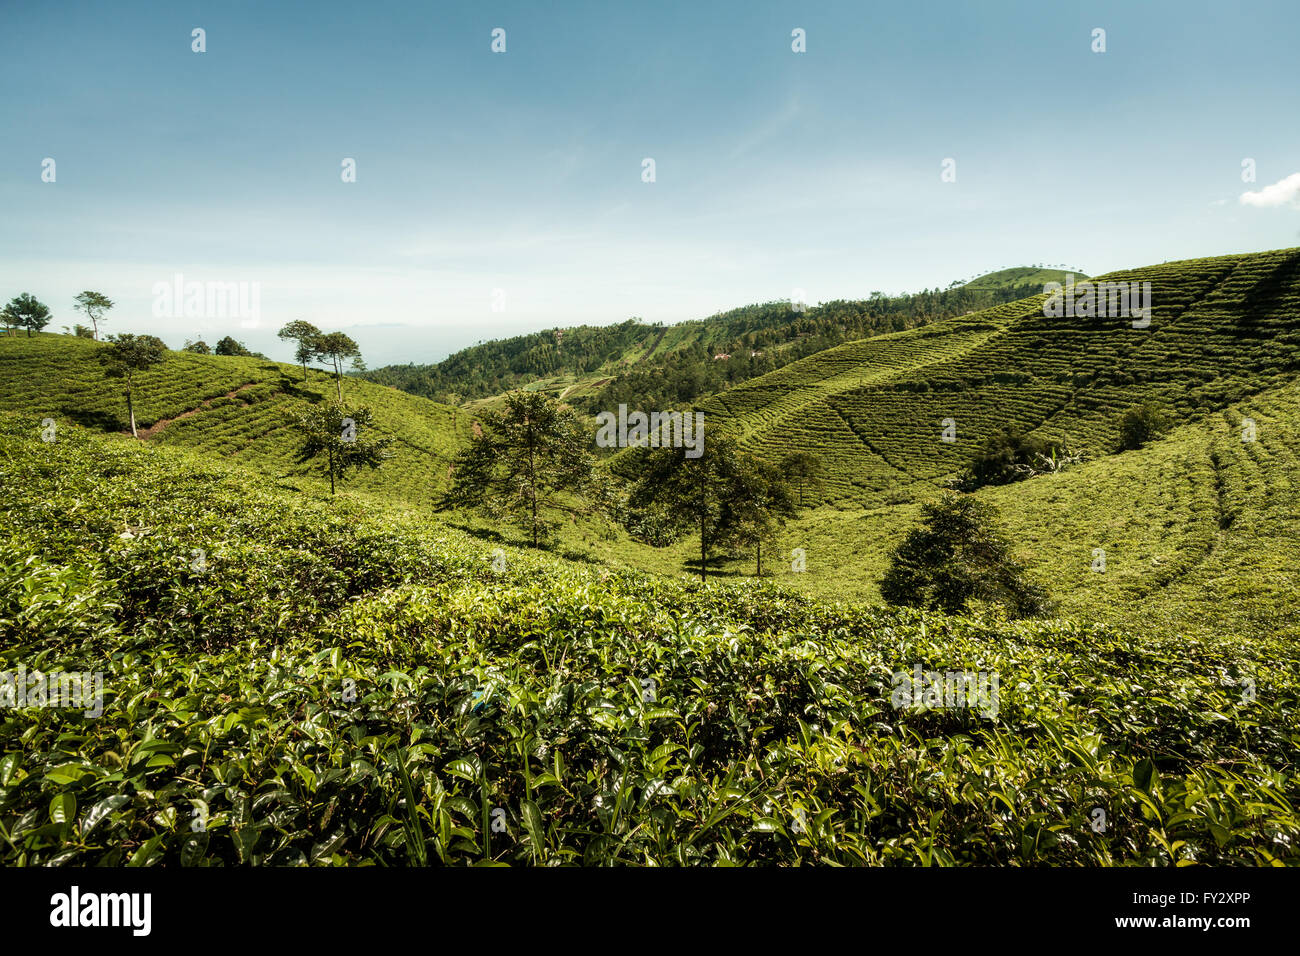 Teeplantagen auf dem fruchtbaren Flanken einer indonesischen Vulkan in Central Java, Indonesien. Sanfte Hügel bedeckt mit Tee Pflanzen für die teepflückerinnen Stockfoto